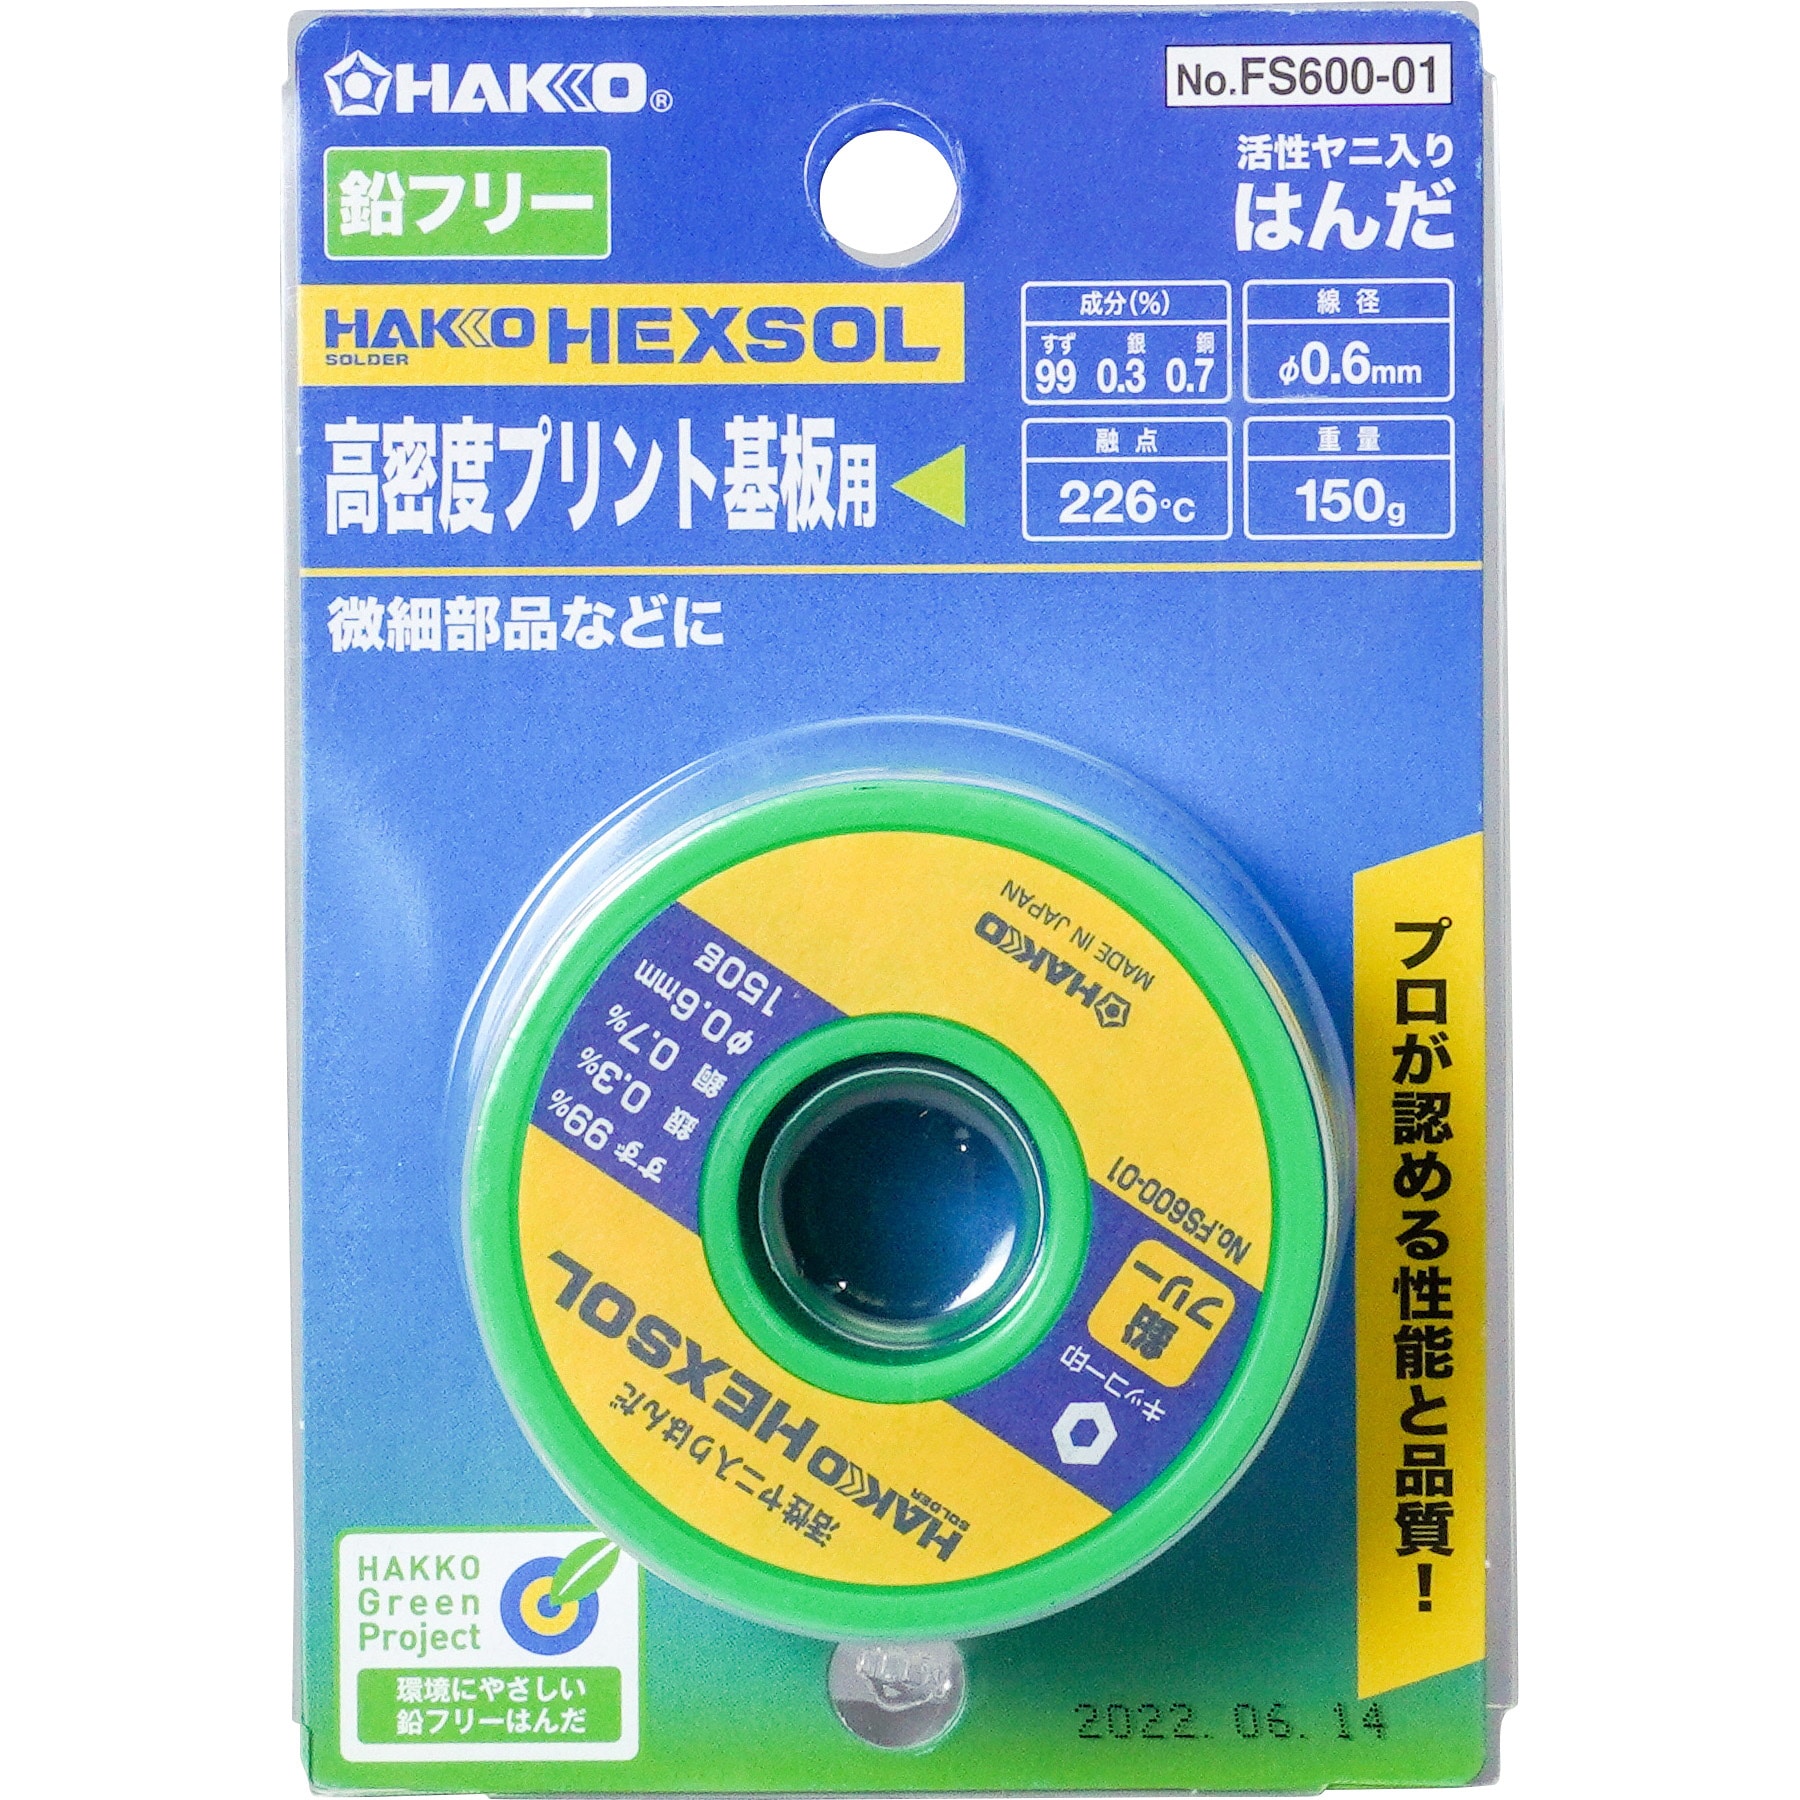 白光(HAKKO) HEXSOL 鉛フリーはんだ 電子部品用 150g FS600-03